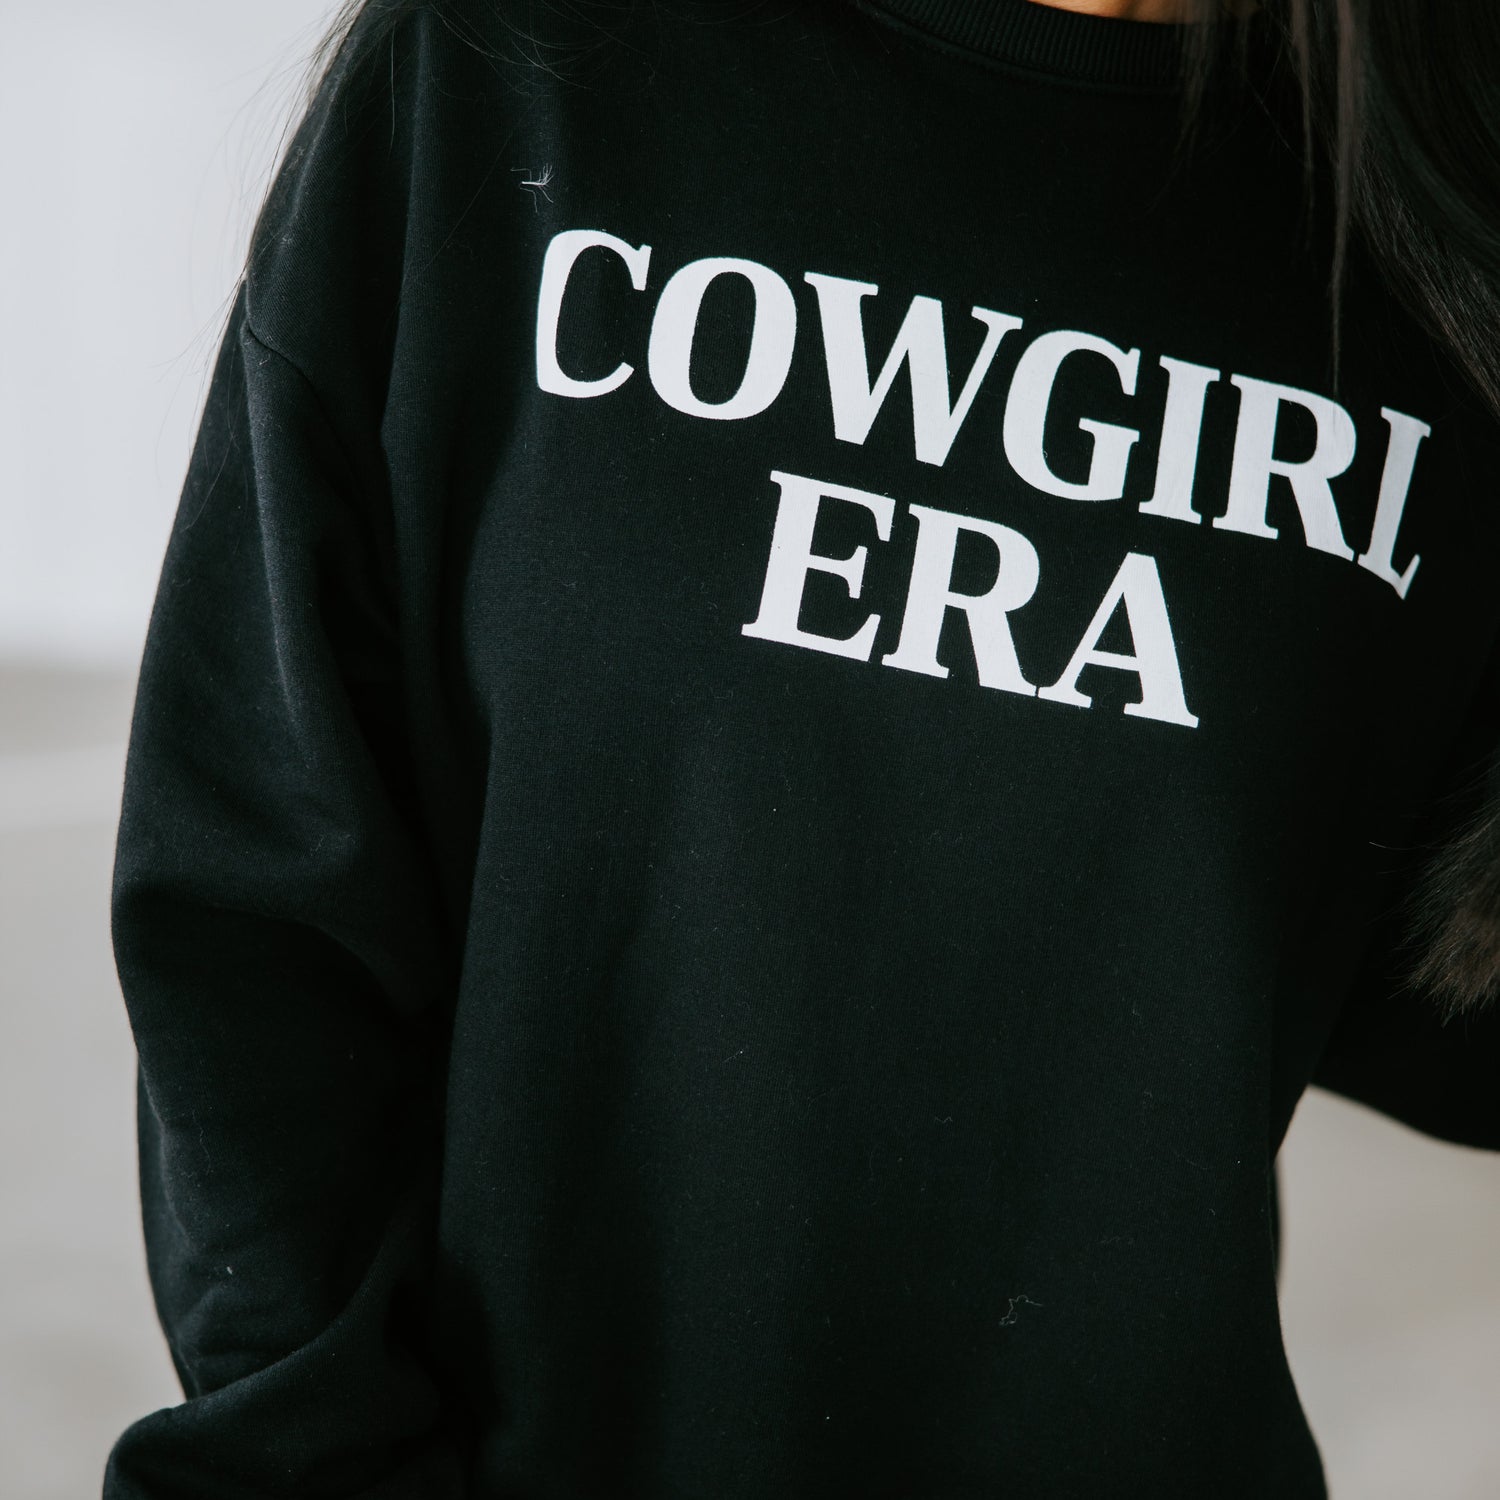 Cowgirl Era Crew by Chelsea DeBoer